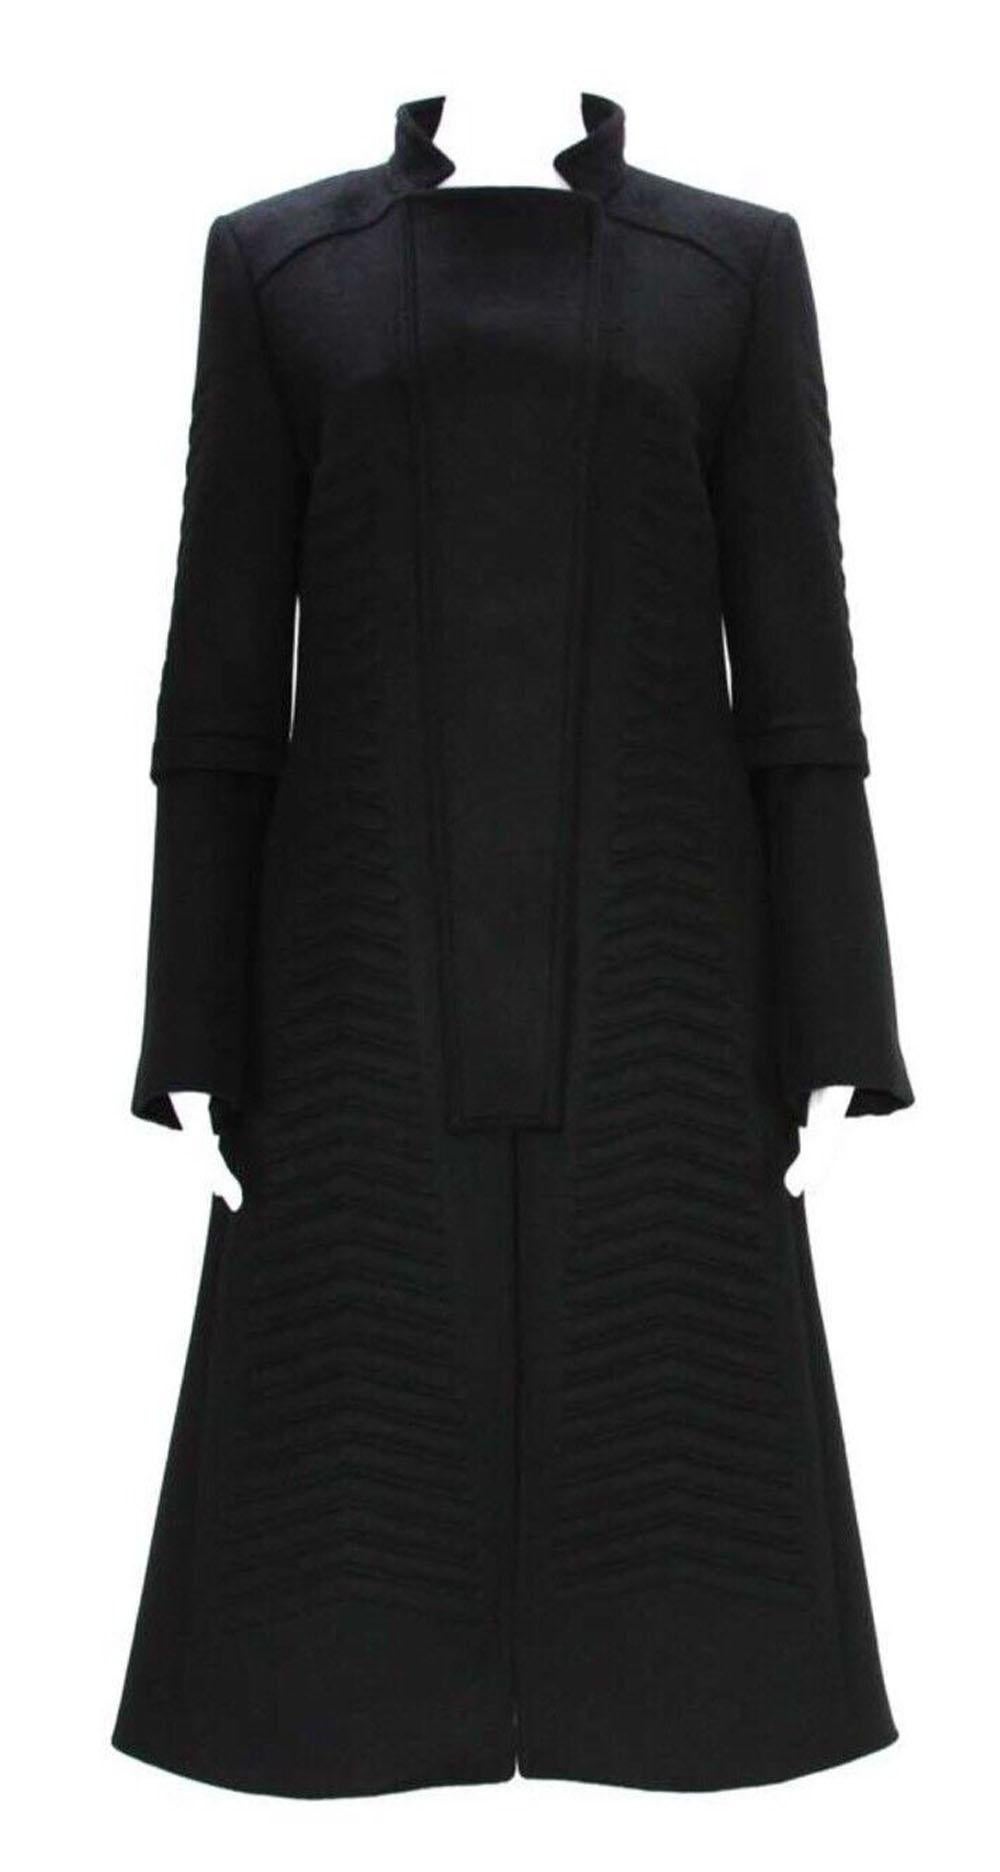 Manteau noir Tom Ford pour Gucci avec ceinture
Collection F/W 2004
Laine angora noire, matelassé en motif chevron, double boutonnage, fermeture par boutons-pression, poches latérales. 
Manches cloche avec fermeture éclair, entièrement doublée,